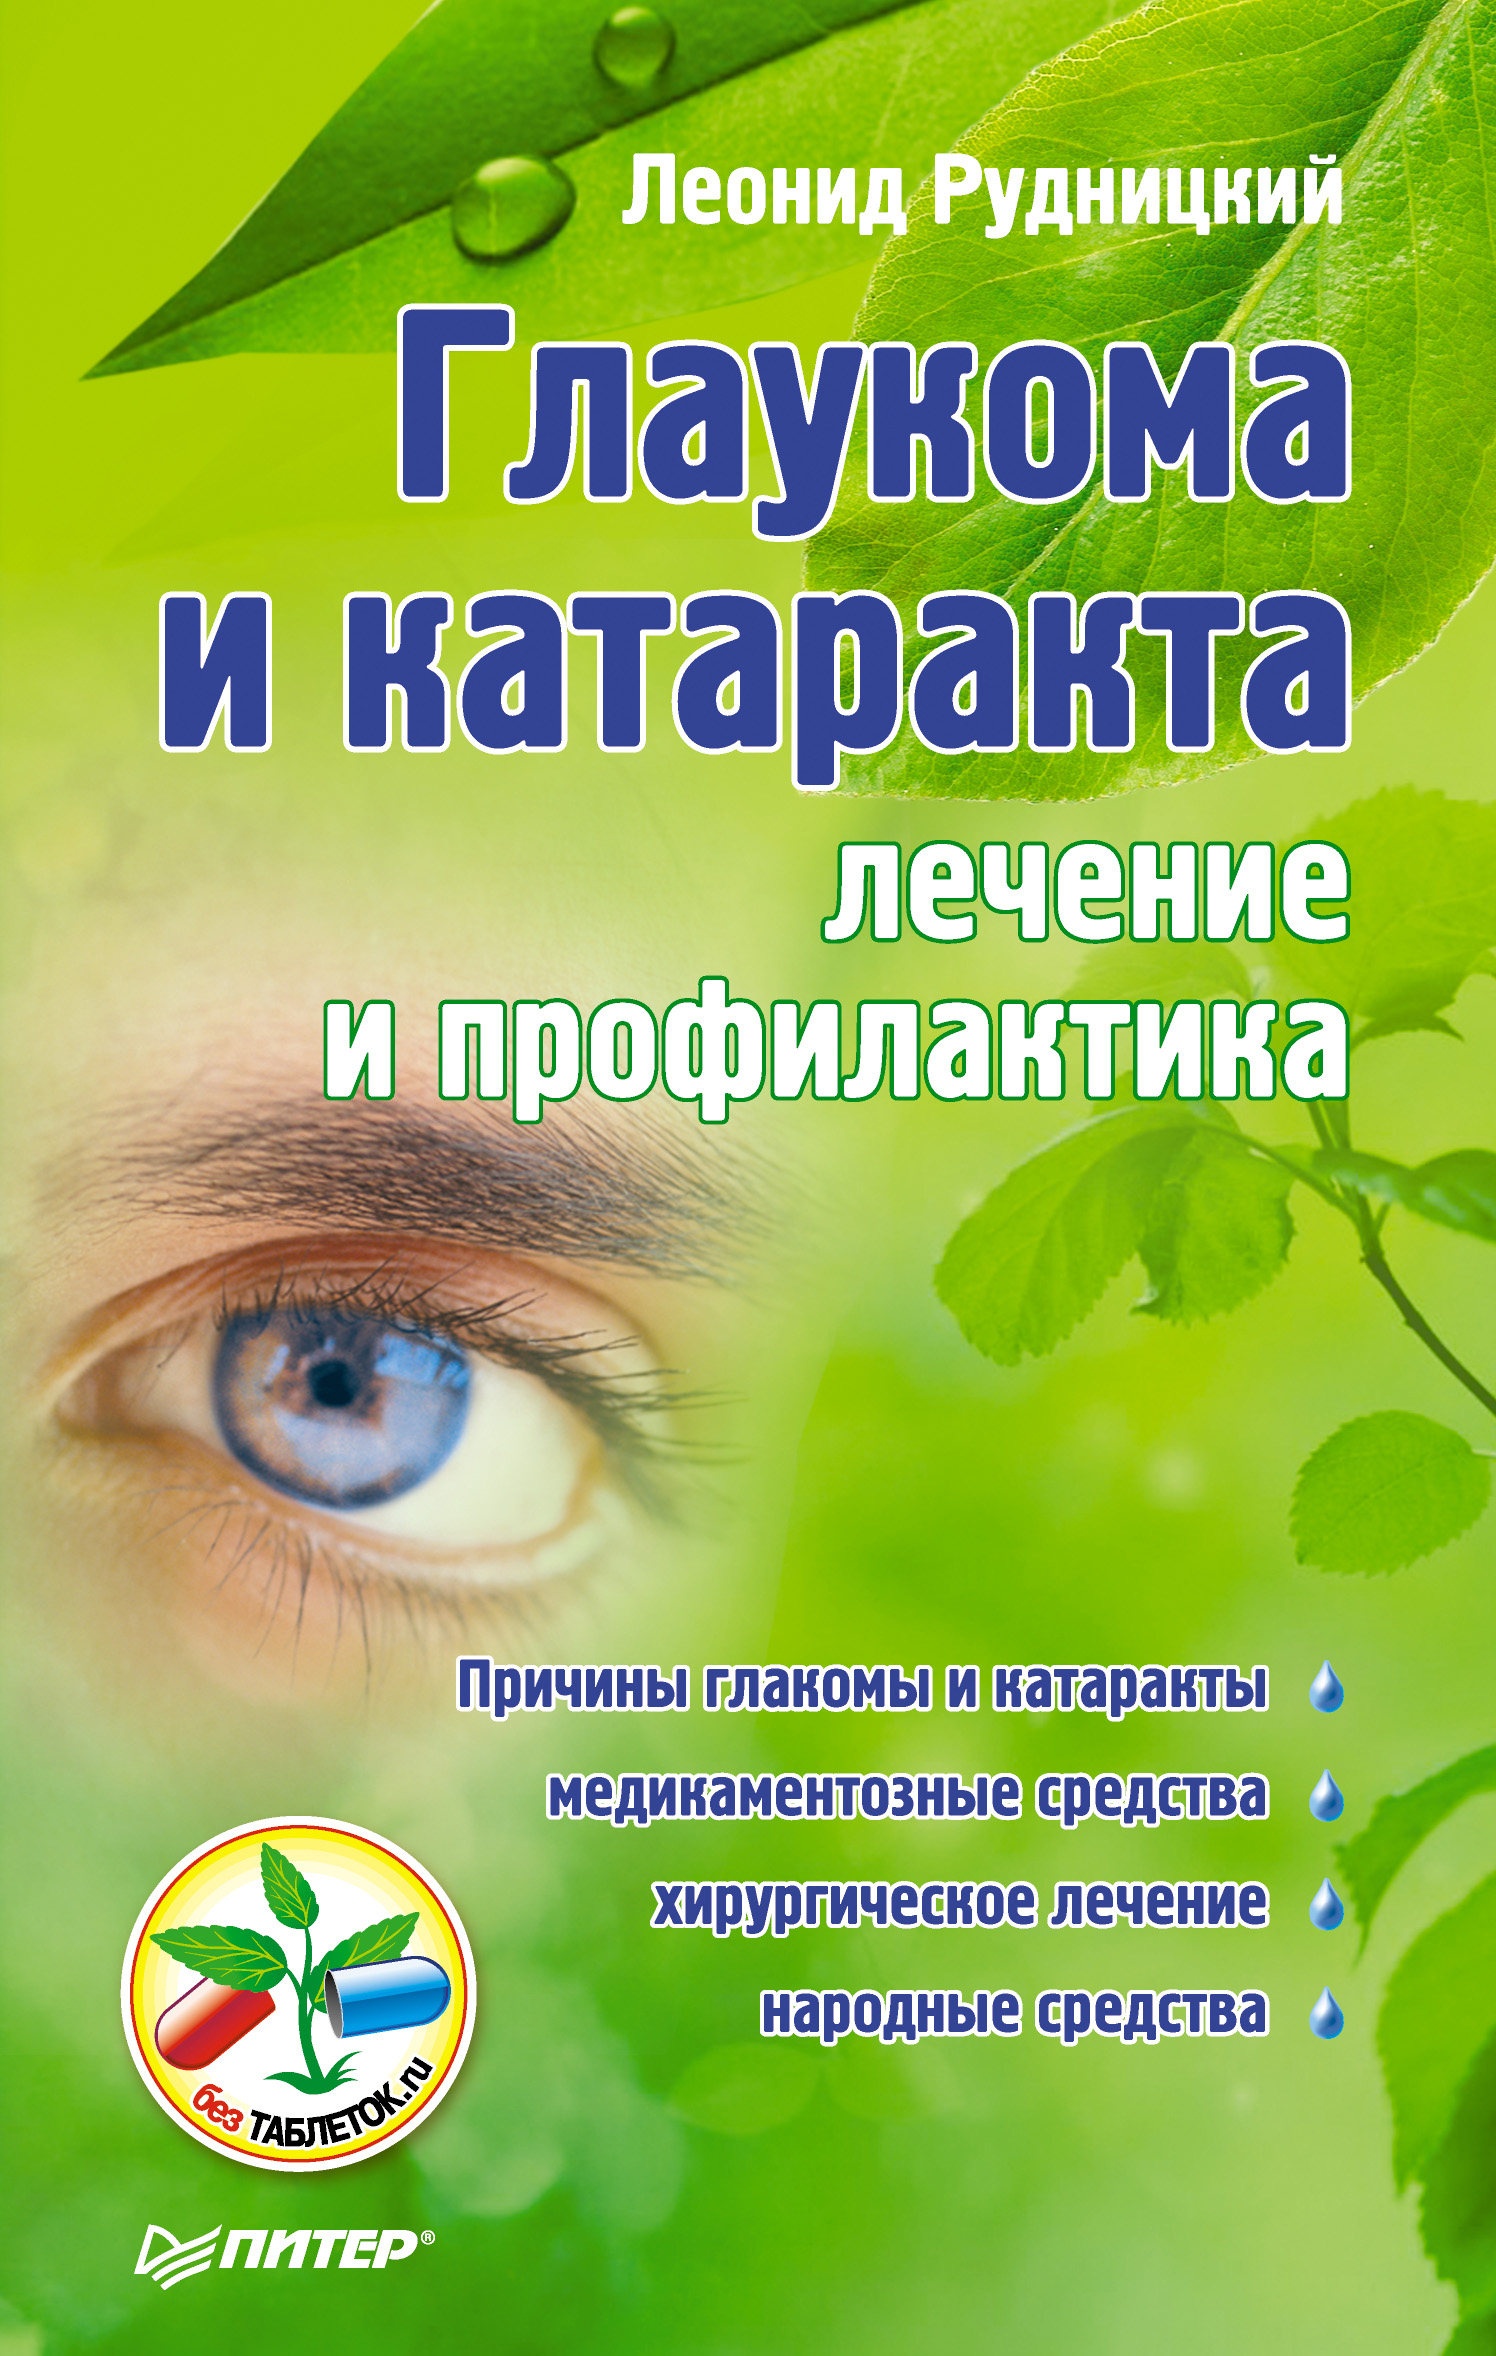 Леонид Рудницкий «Глаукома и катаракта: лечение и профилактика»